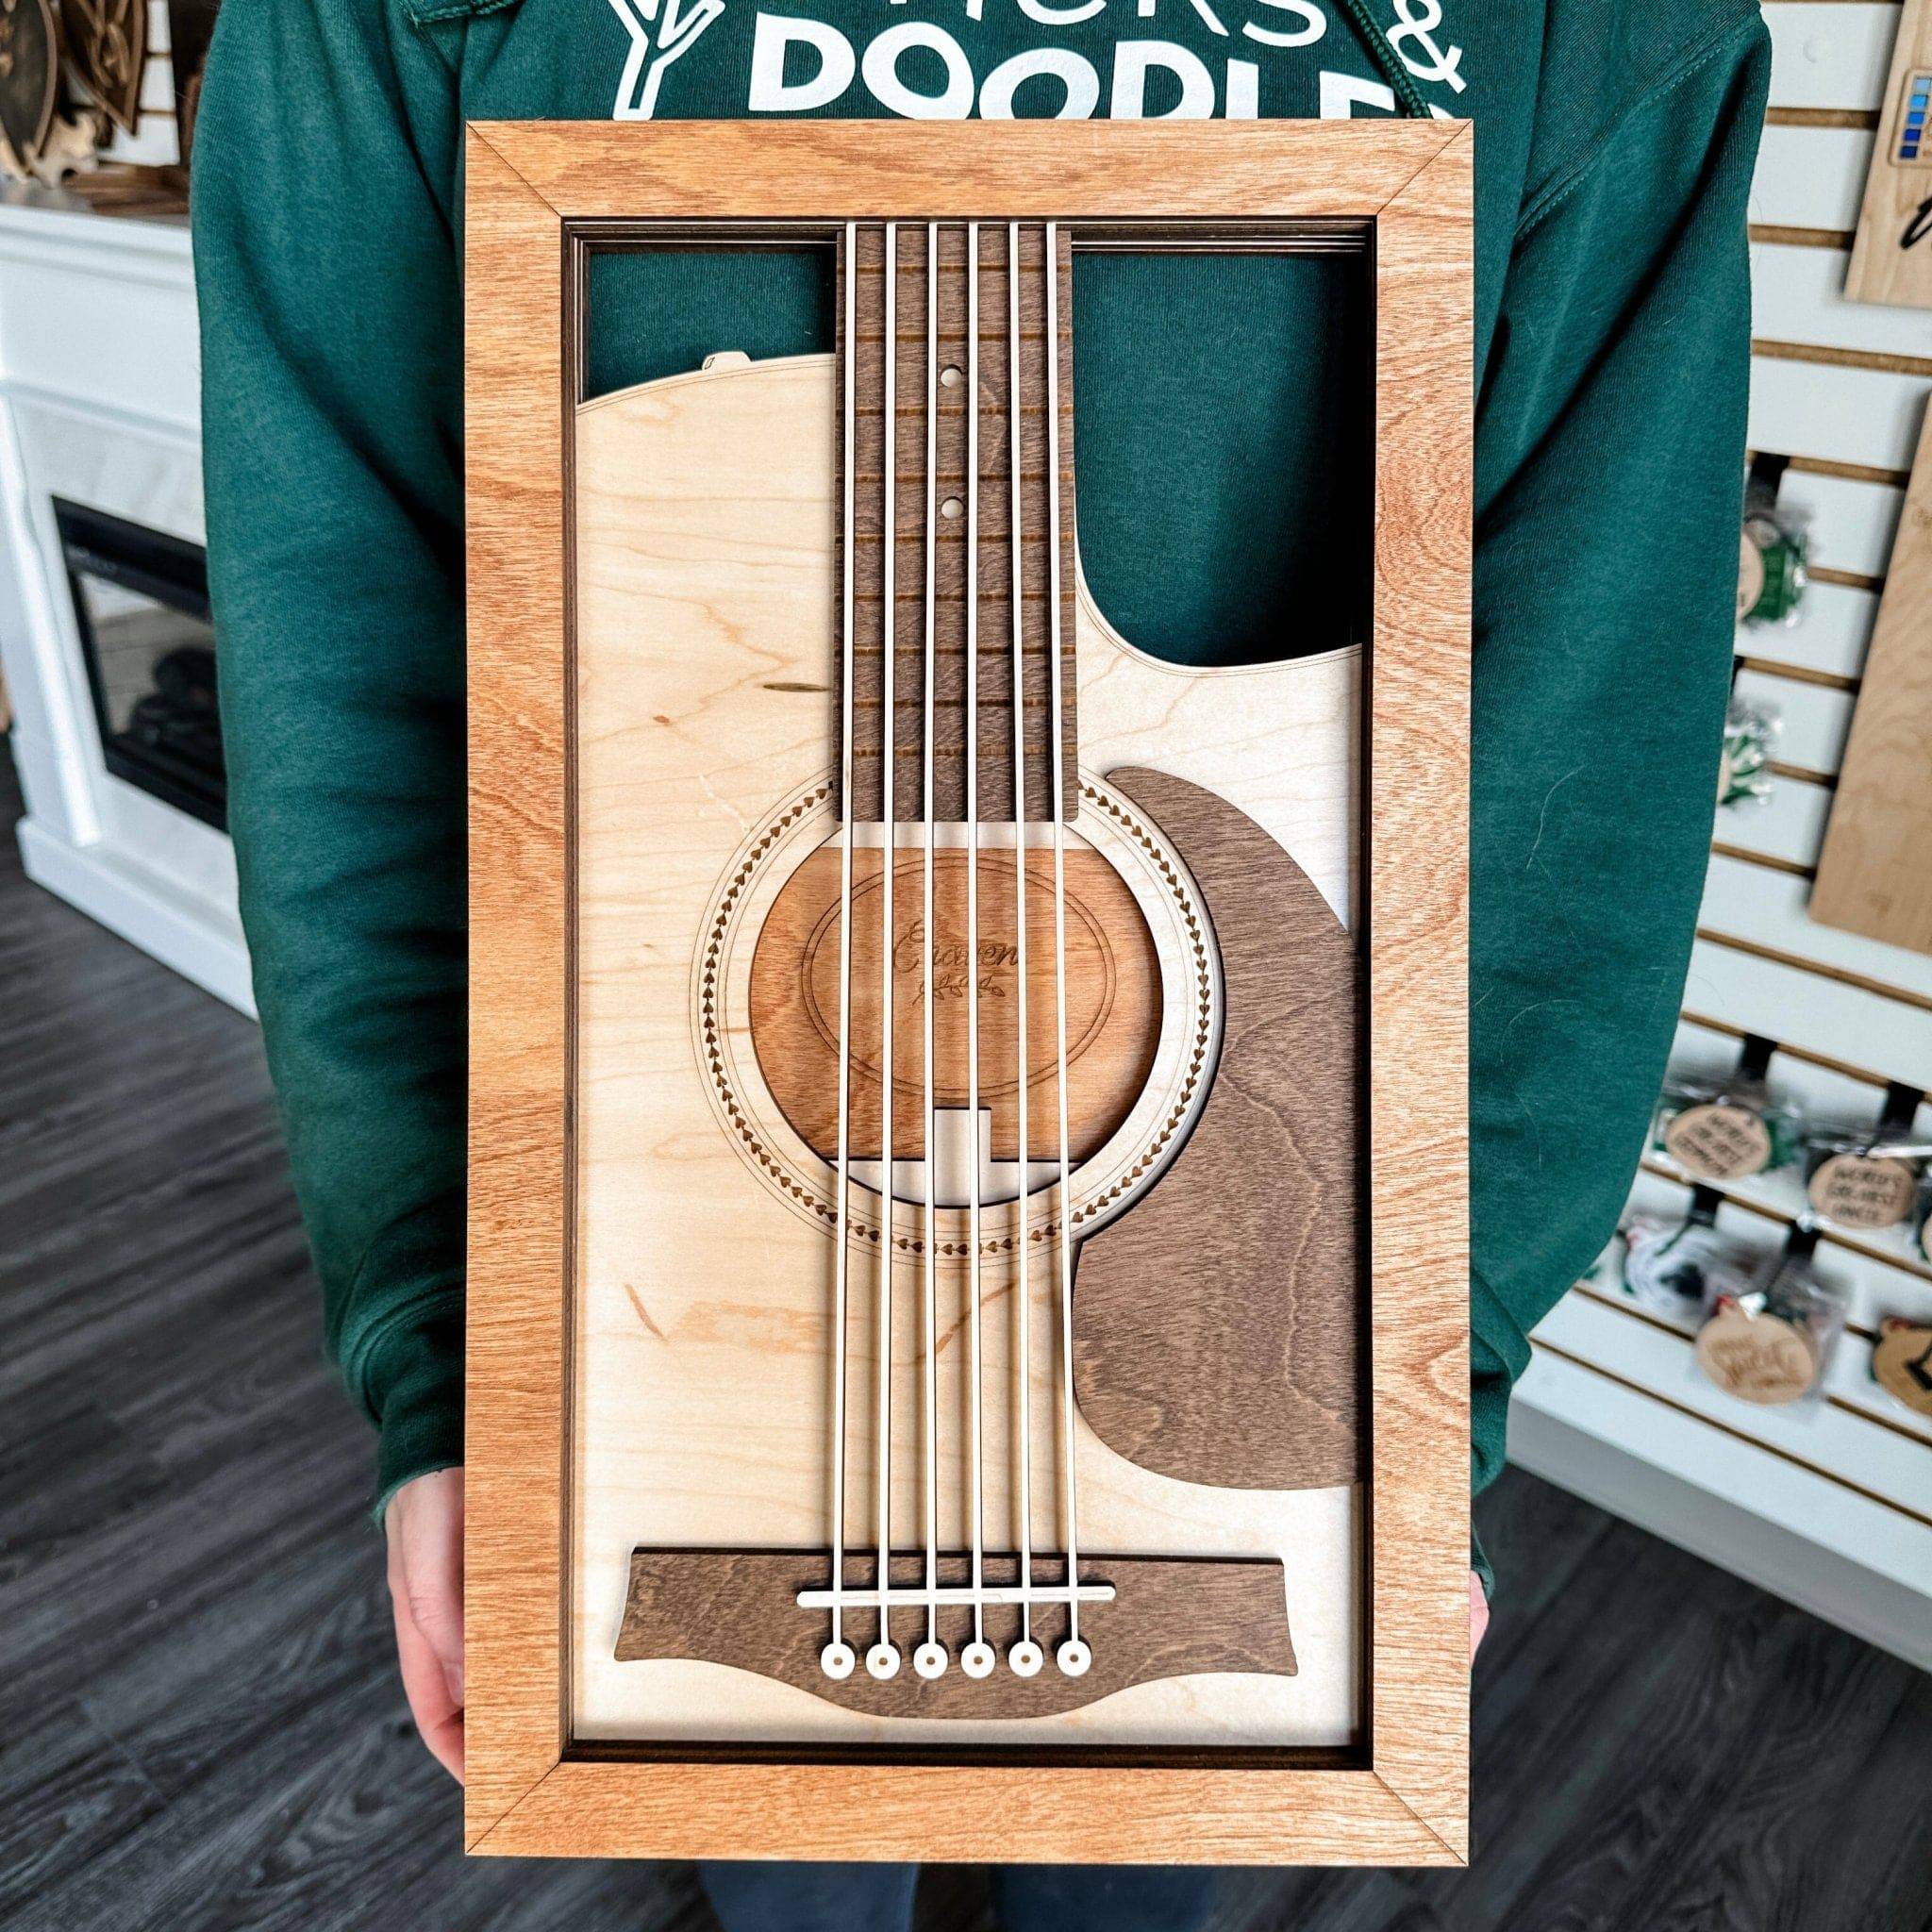 Multilayer Guitar 3D Wood Art - Sticks & Doodles